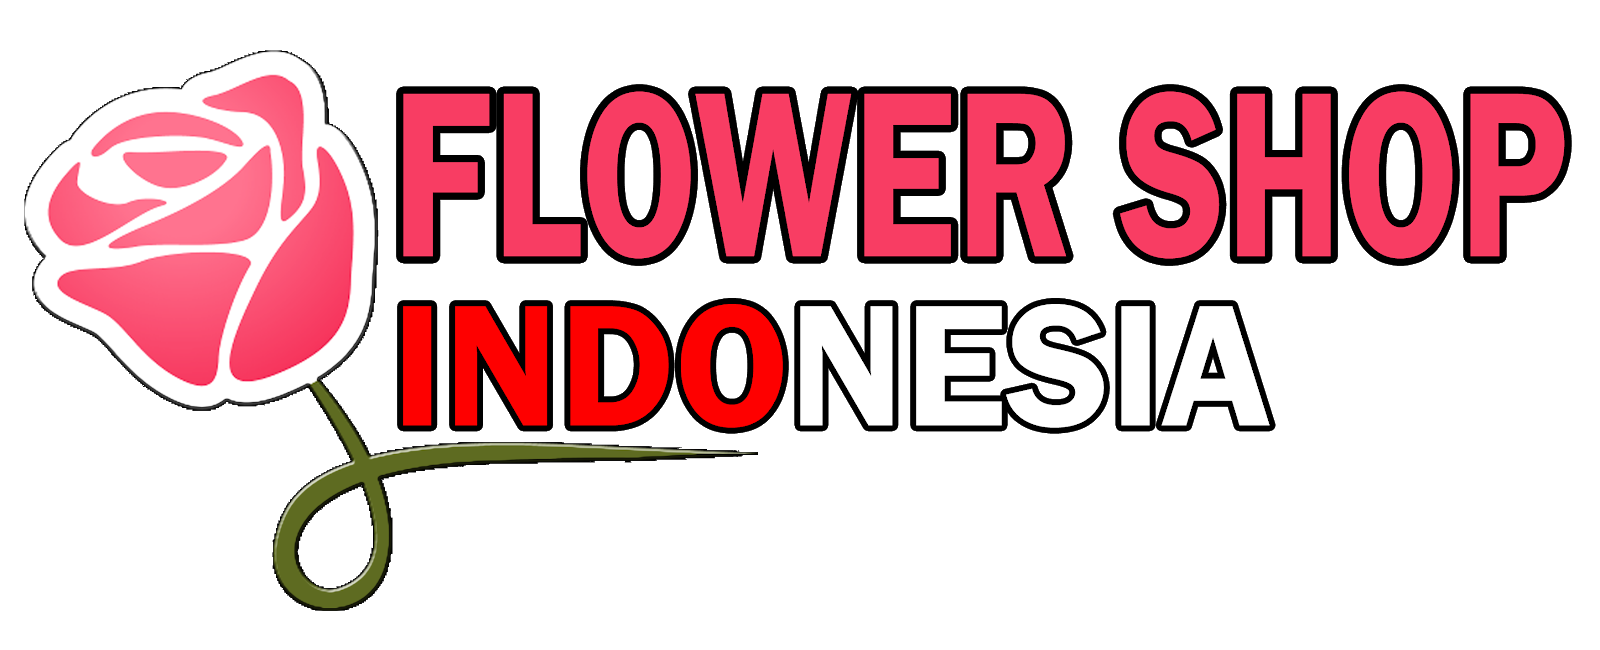 Flower Shop Indonesia - Toko Karangan Bunga Papan Ucapan, Pernikahan, Duka Cita, Congratulations Perusahaan, Selamat & Sukses. Pesan Langsung Kirim Hari Ini. Siap Menerima Kiriman Ke Seluruh Kota Di Indonesia